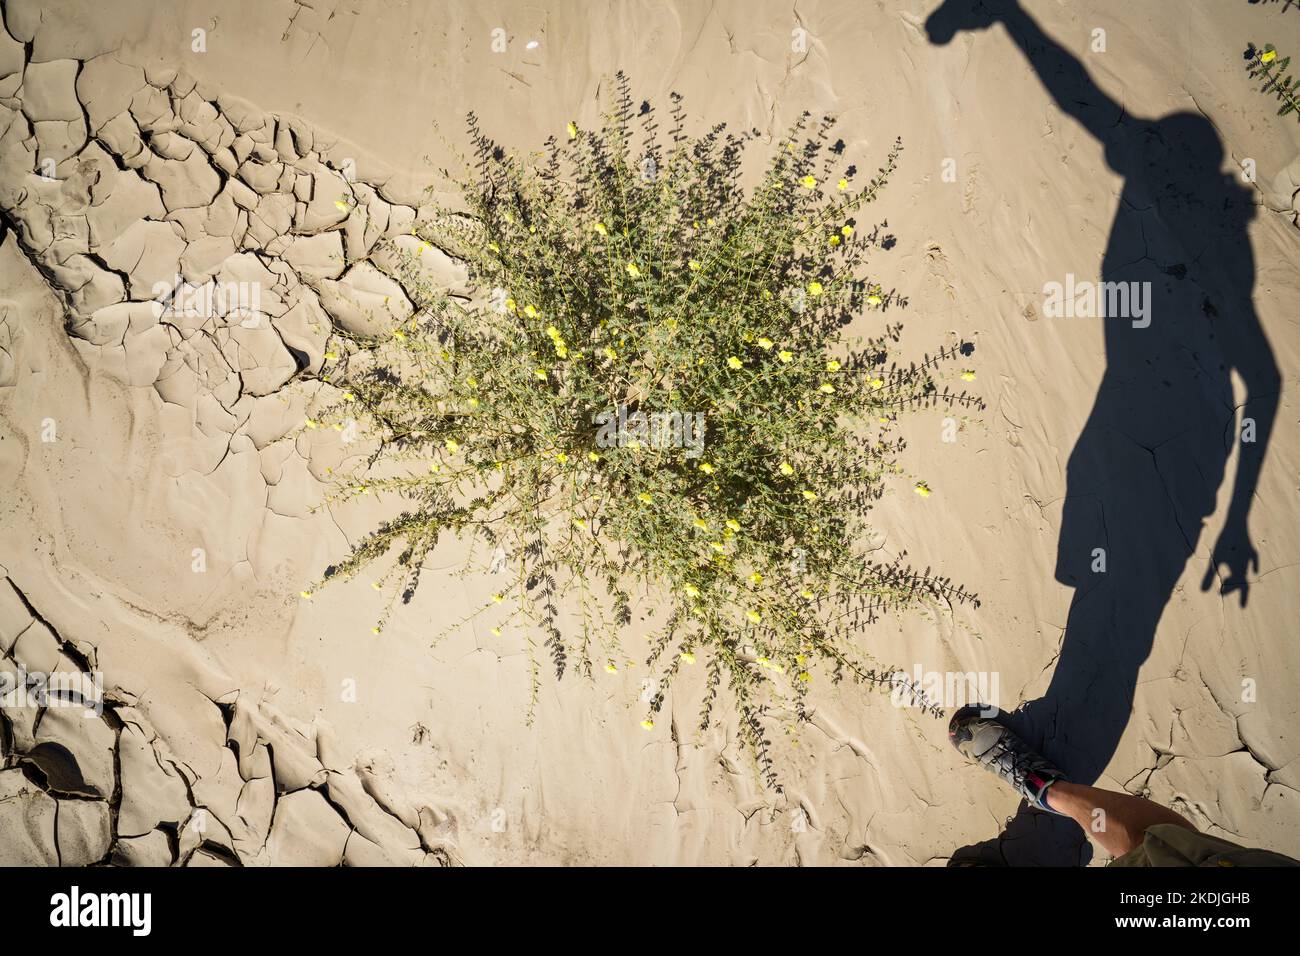 Les plantes vertes poussent dans des motifs de lit de rivière sec avec l'ombre du photographe. Rivière Swakop, Namibie, Afrique Banque D'Images